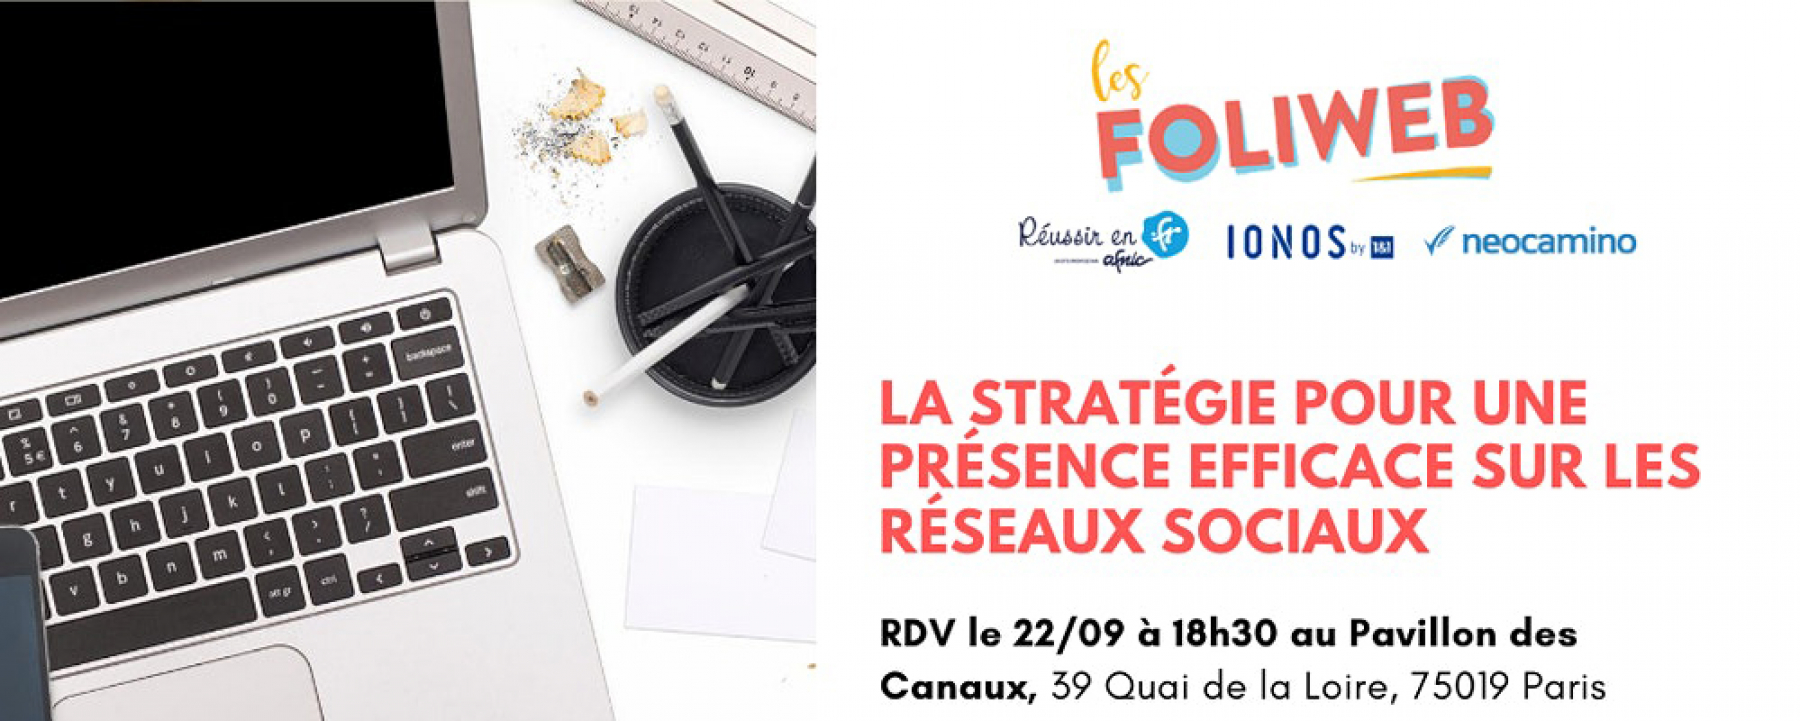 Webinar La stratégie pour une présence efficace sur les réseaux sociaux, le 17 septembre 2020, organisé par Les Foliweb